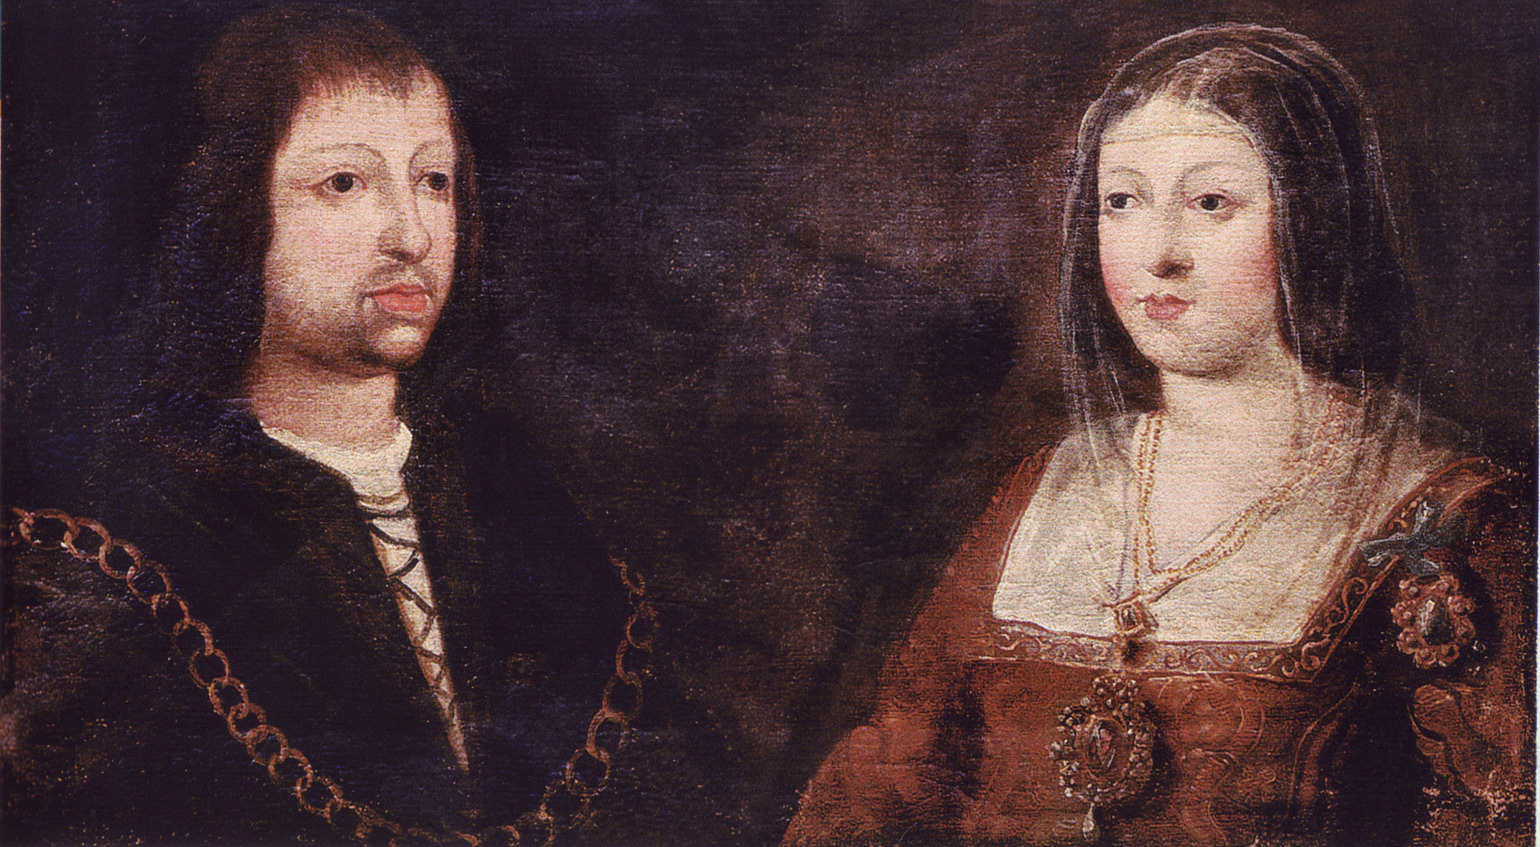 Kristendommens erobrere var Isabella og Ferdinand